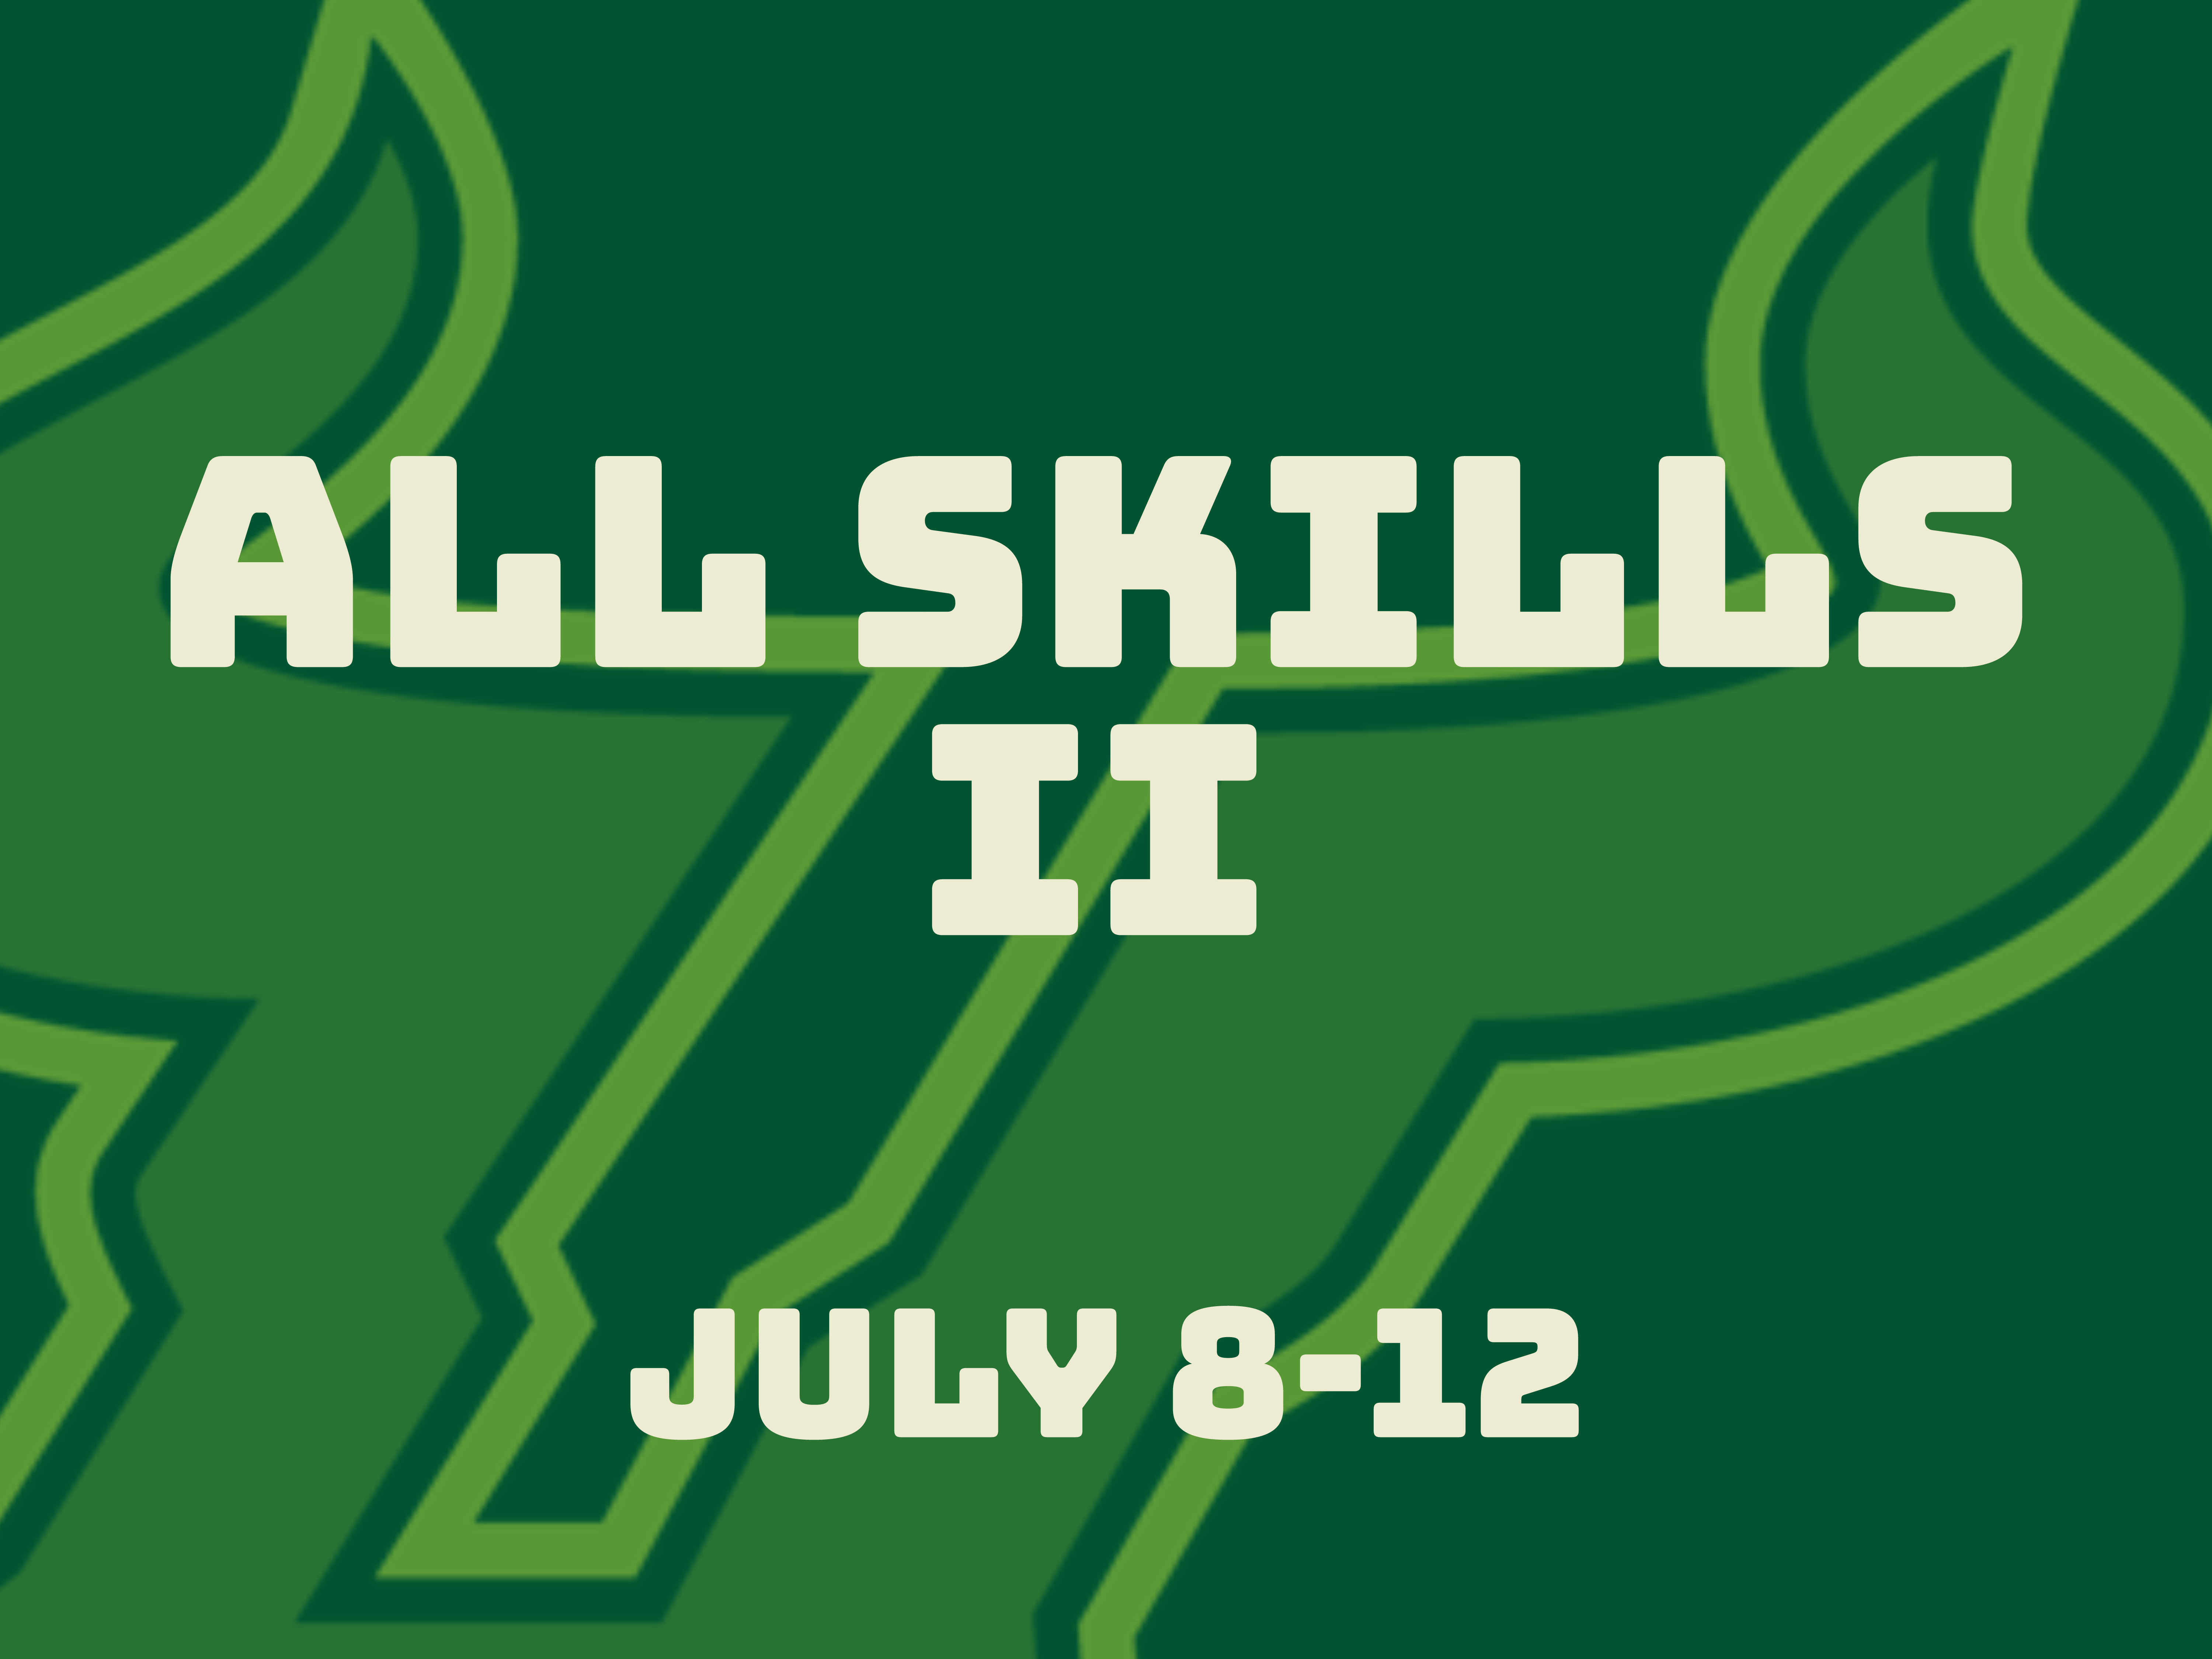 All Skills II event image